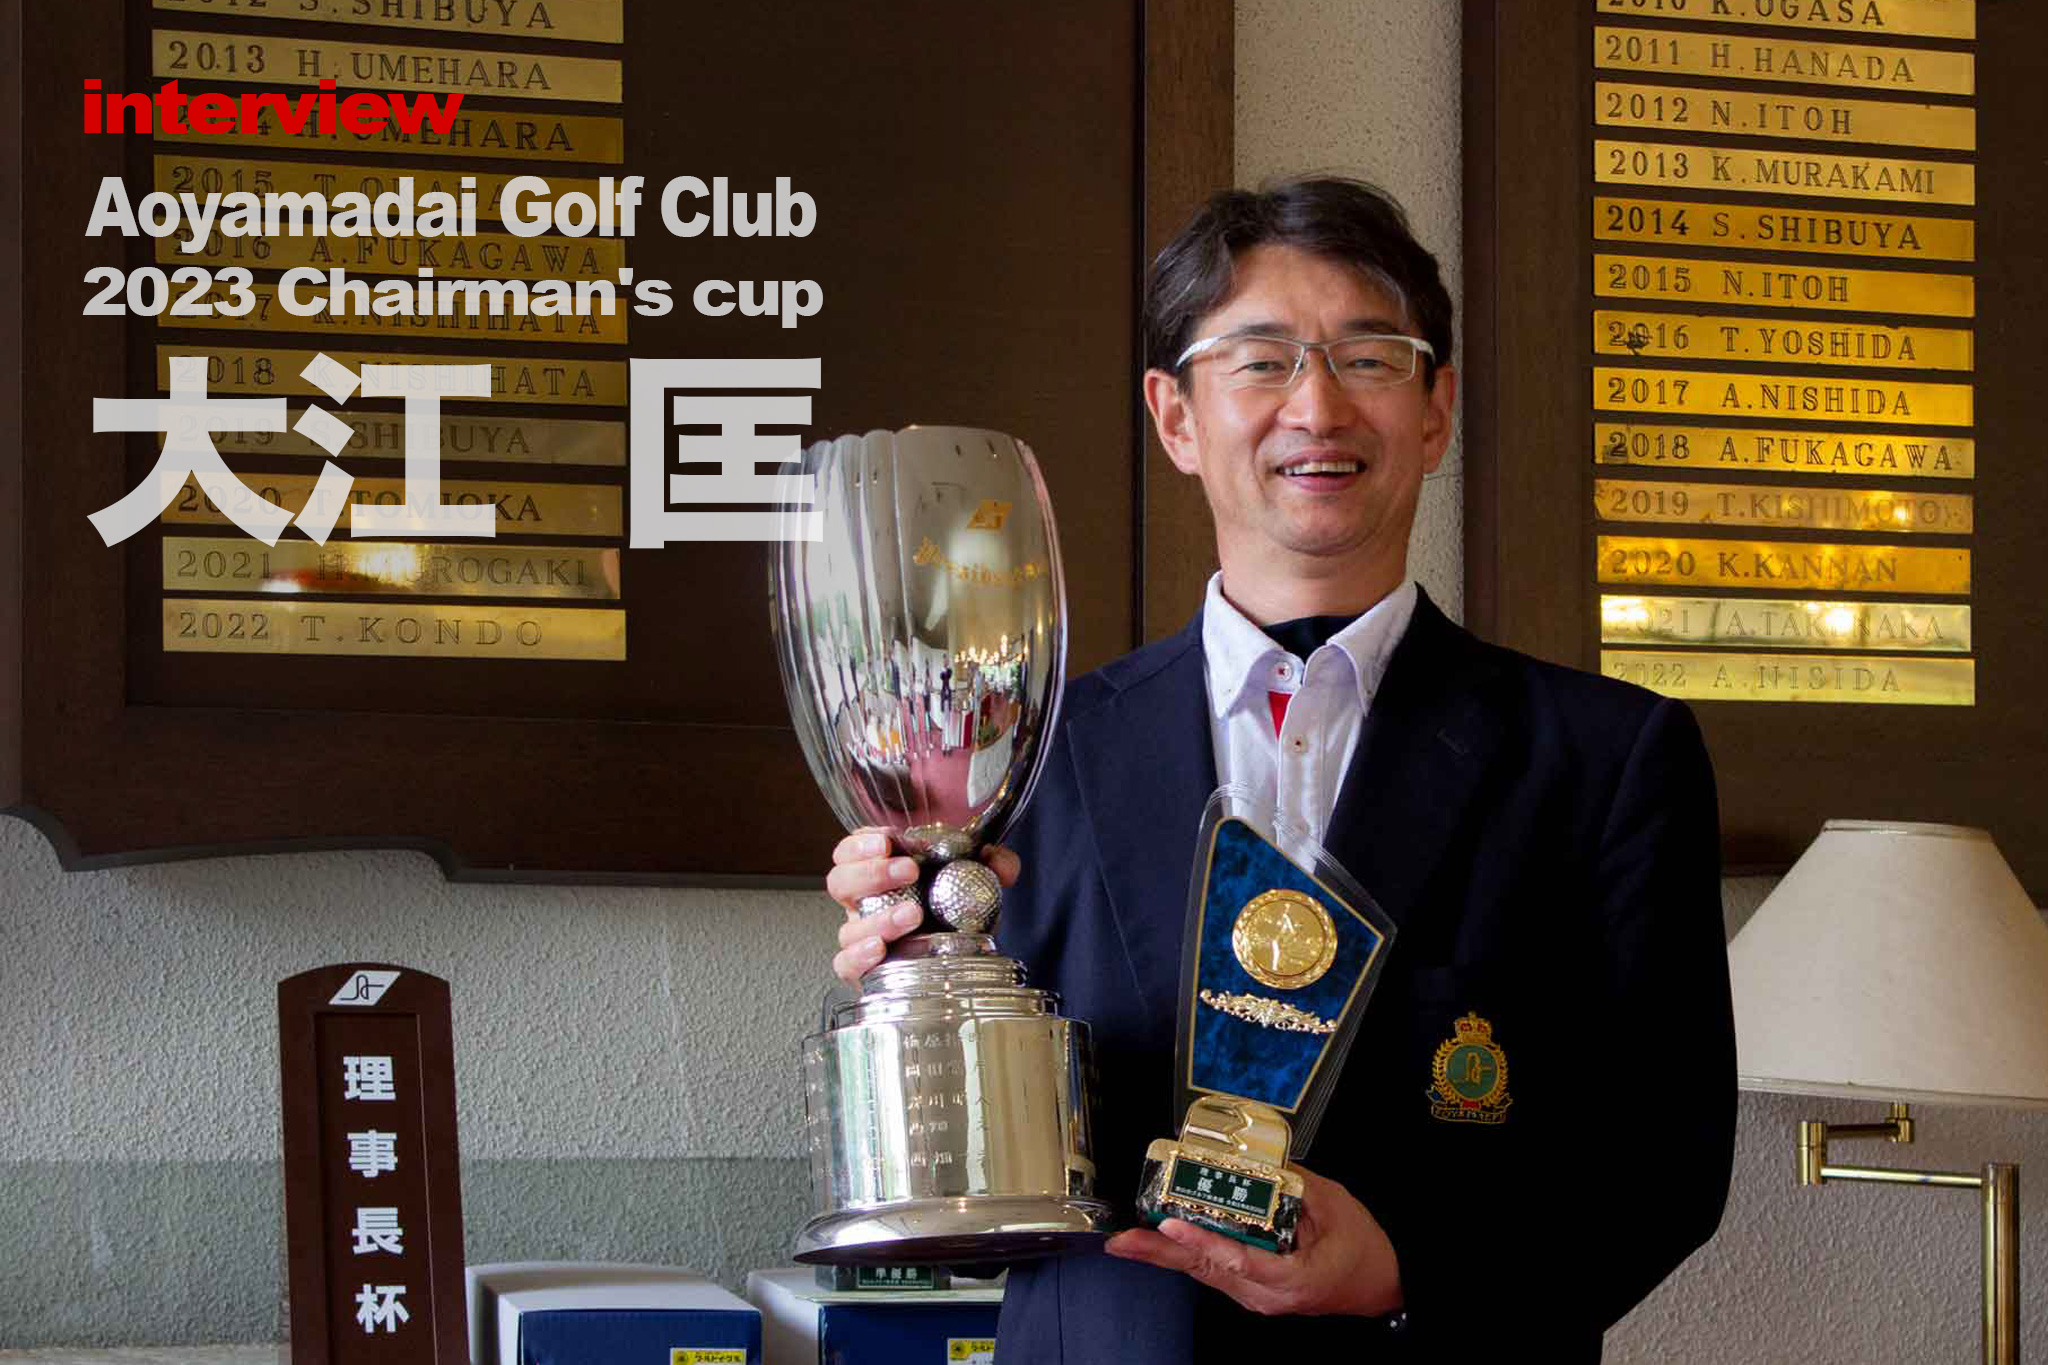 理事長杯チャンピオンを獲得した関西ゴルフサークル セブンエイトの大江匡さん1